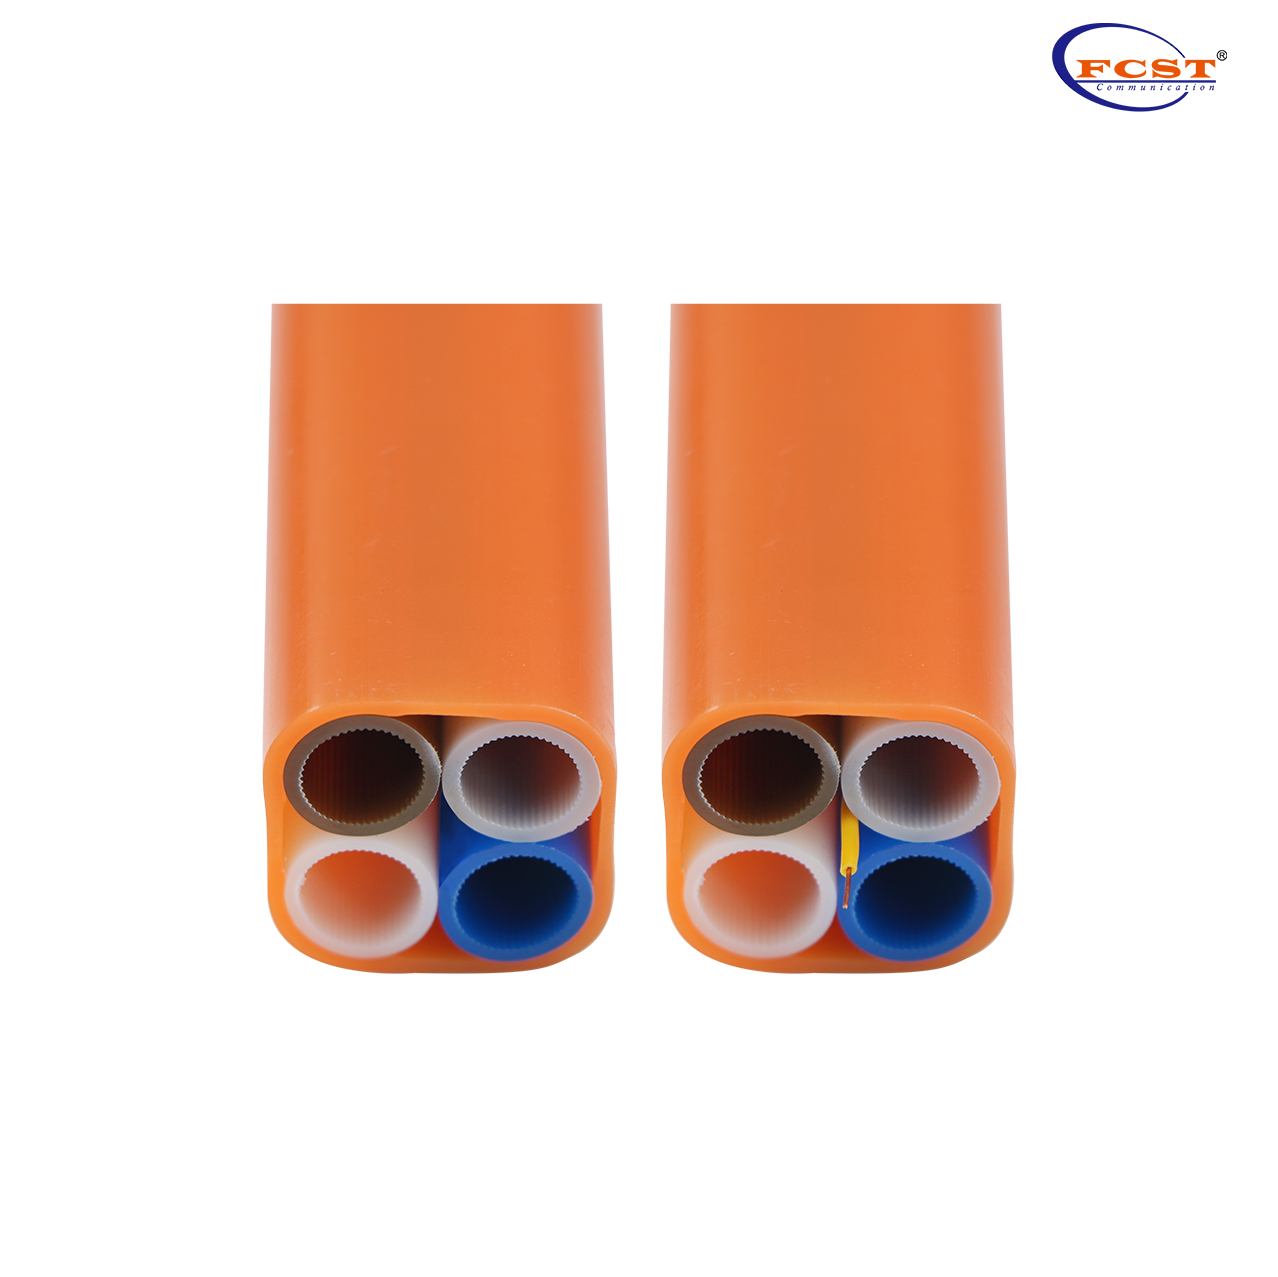 Paquete de tubos HDPE de 4 vías de 12-10 mm PE 1,2 mm DB